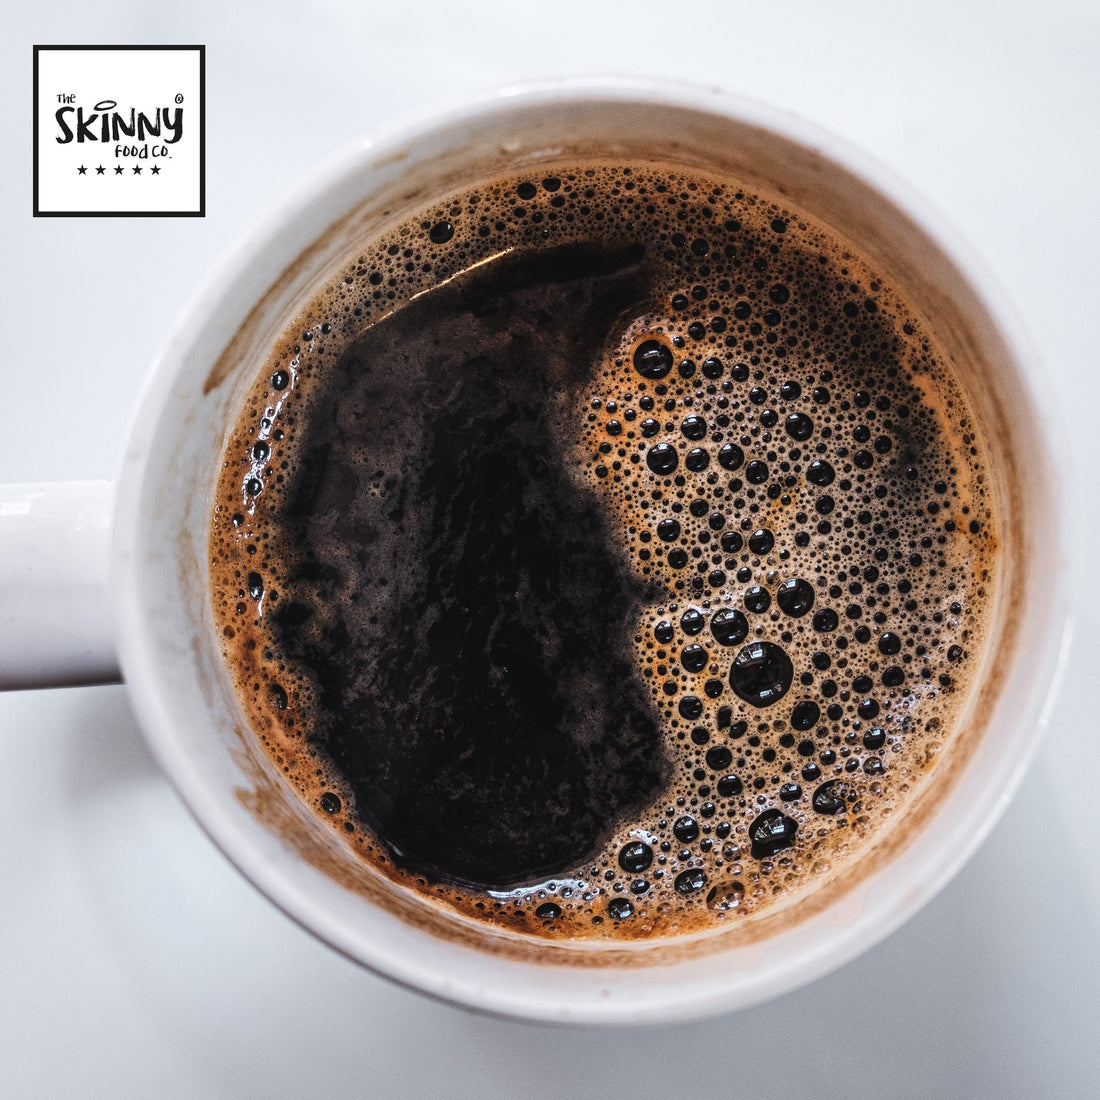 Jak wyciąć cukier z porannej kawy?